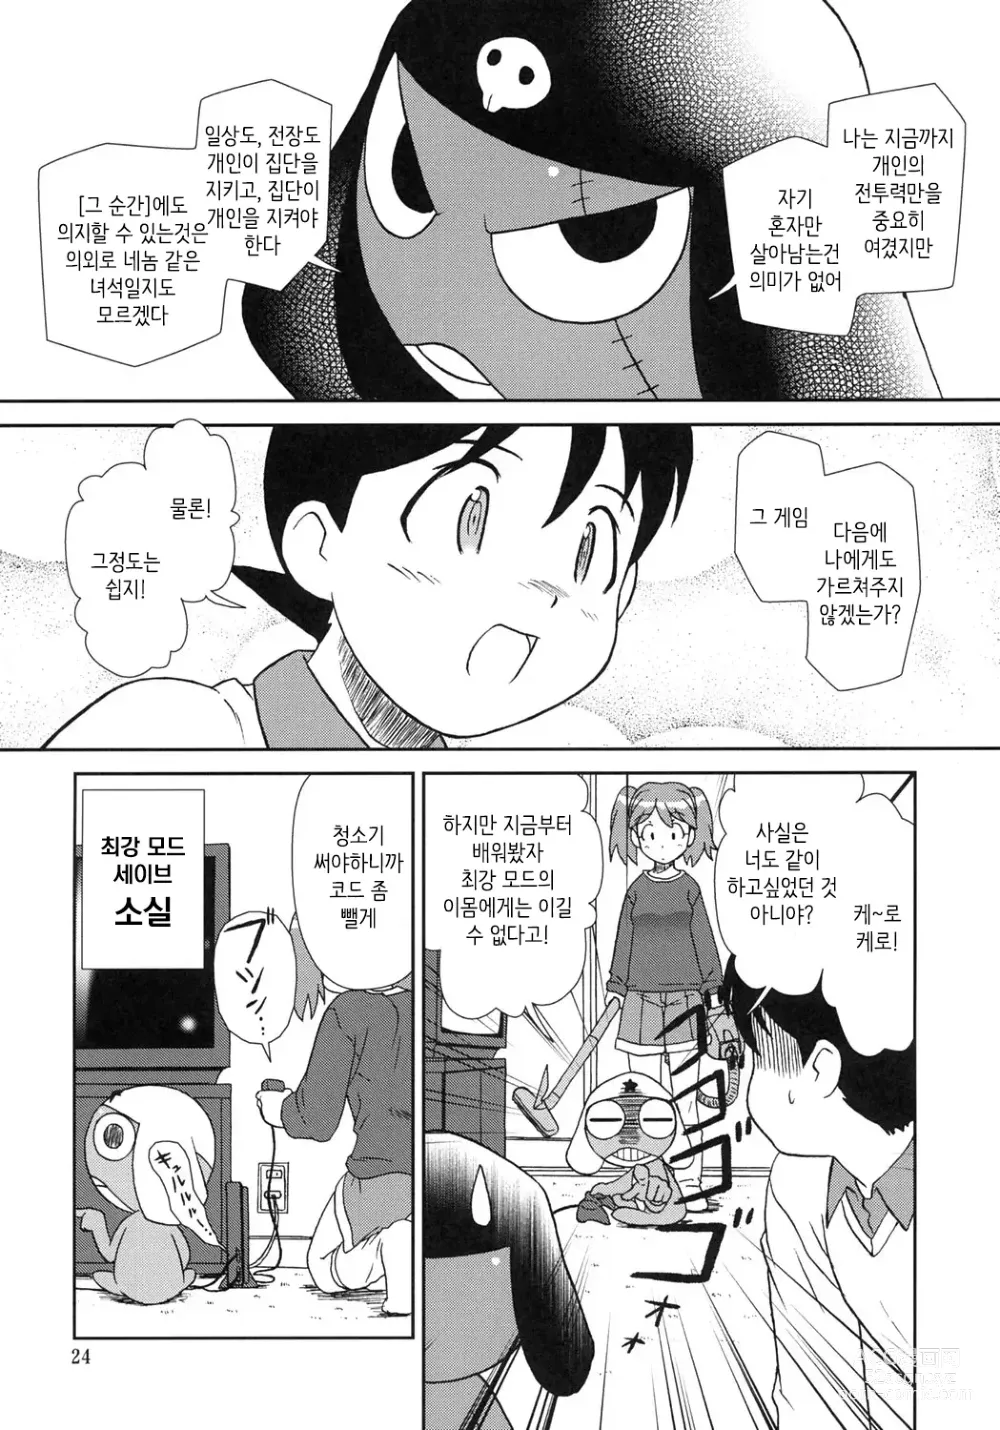 Page 23 of doujinshi 마음이 문제